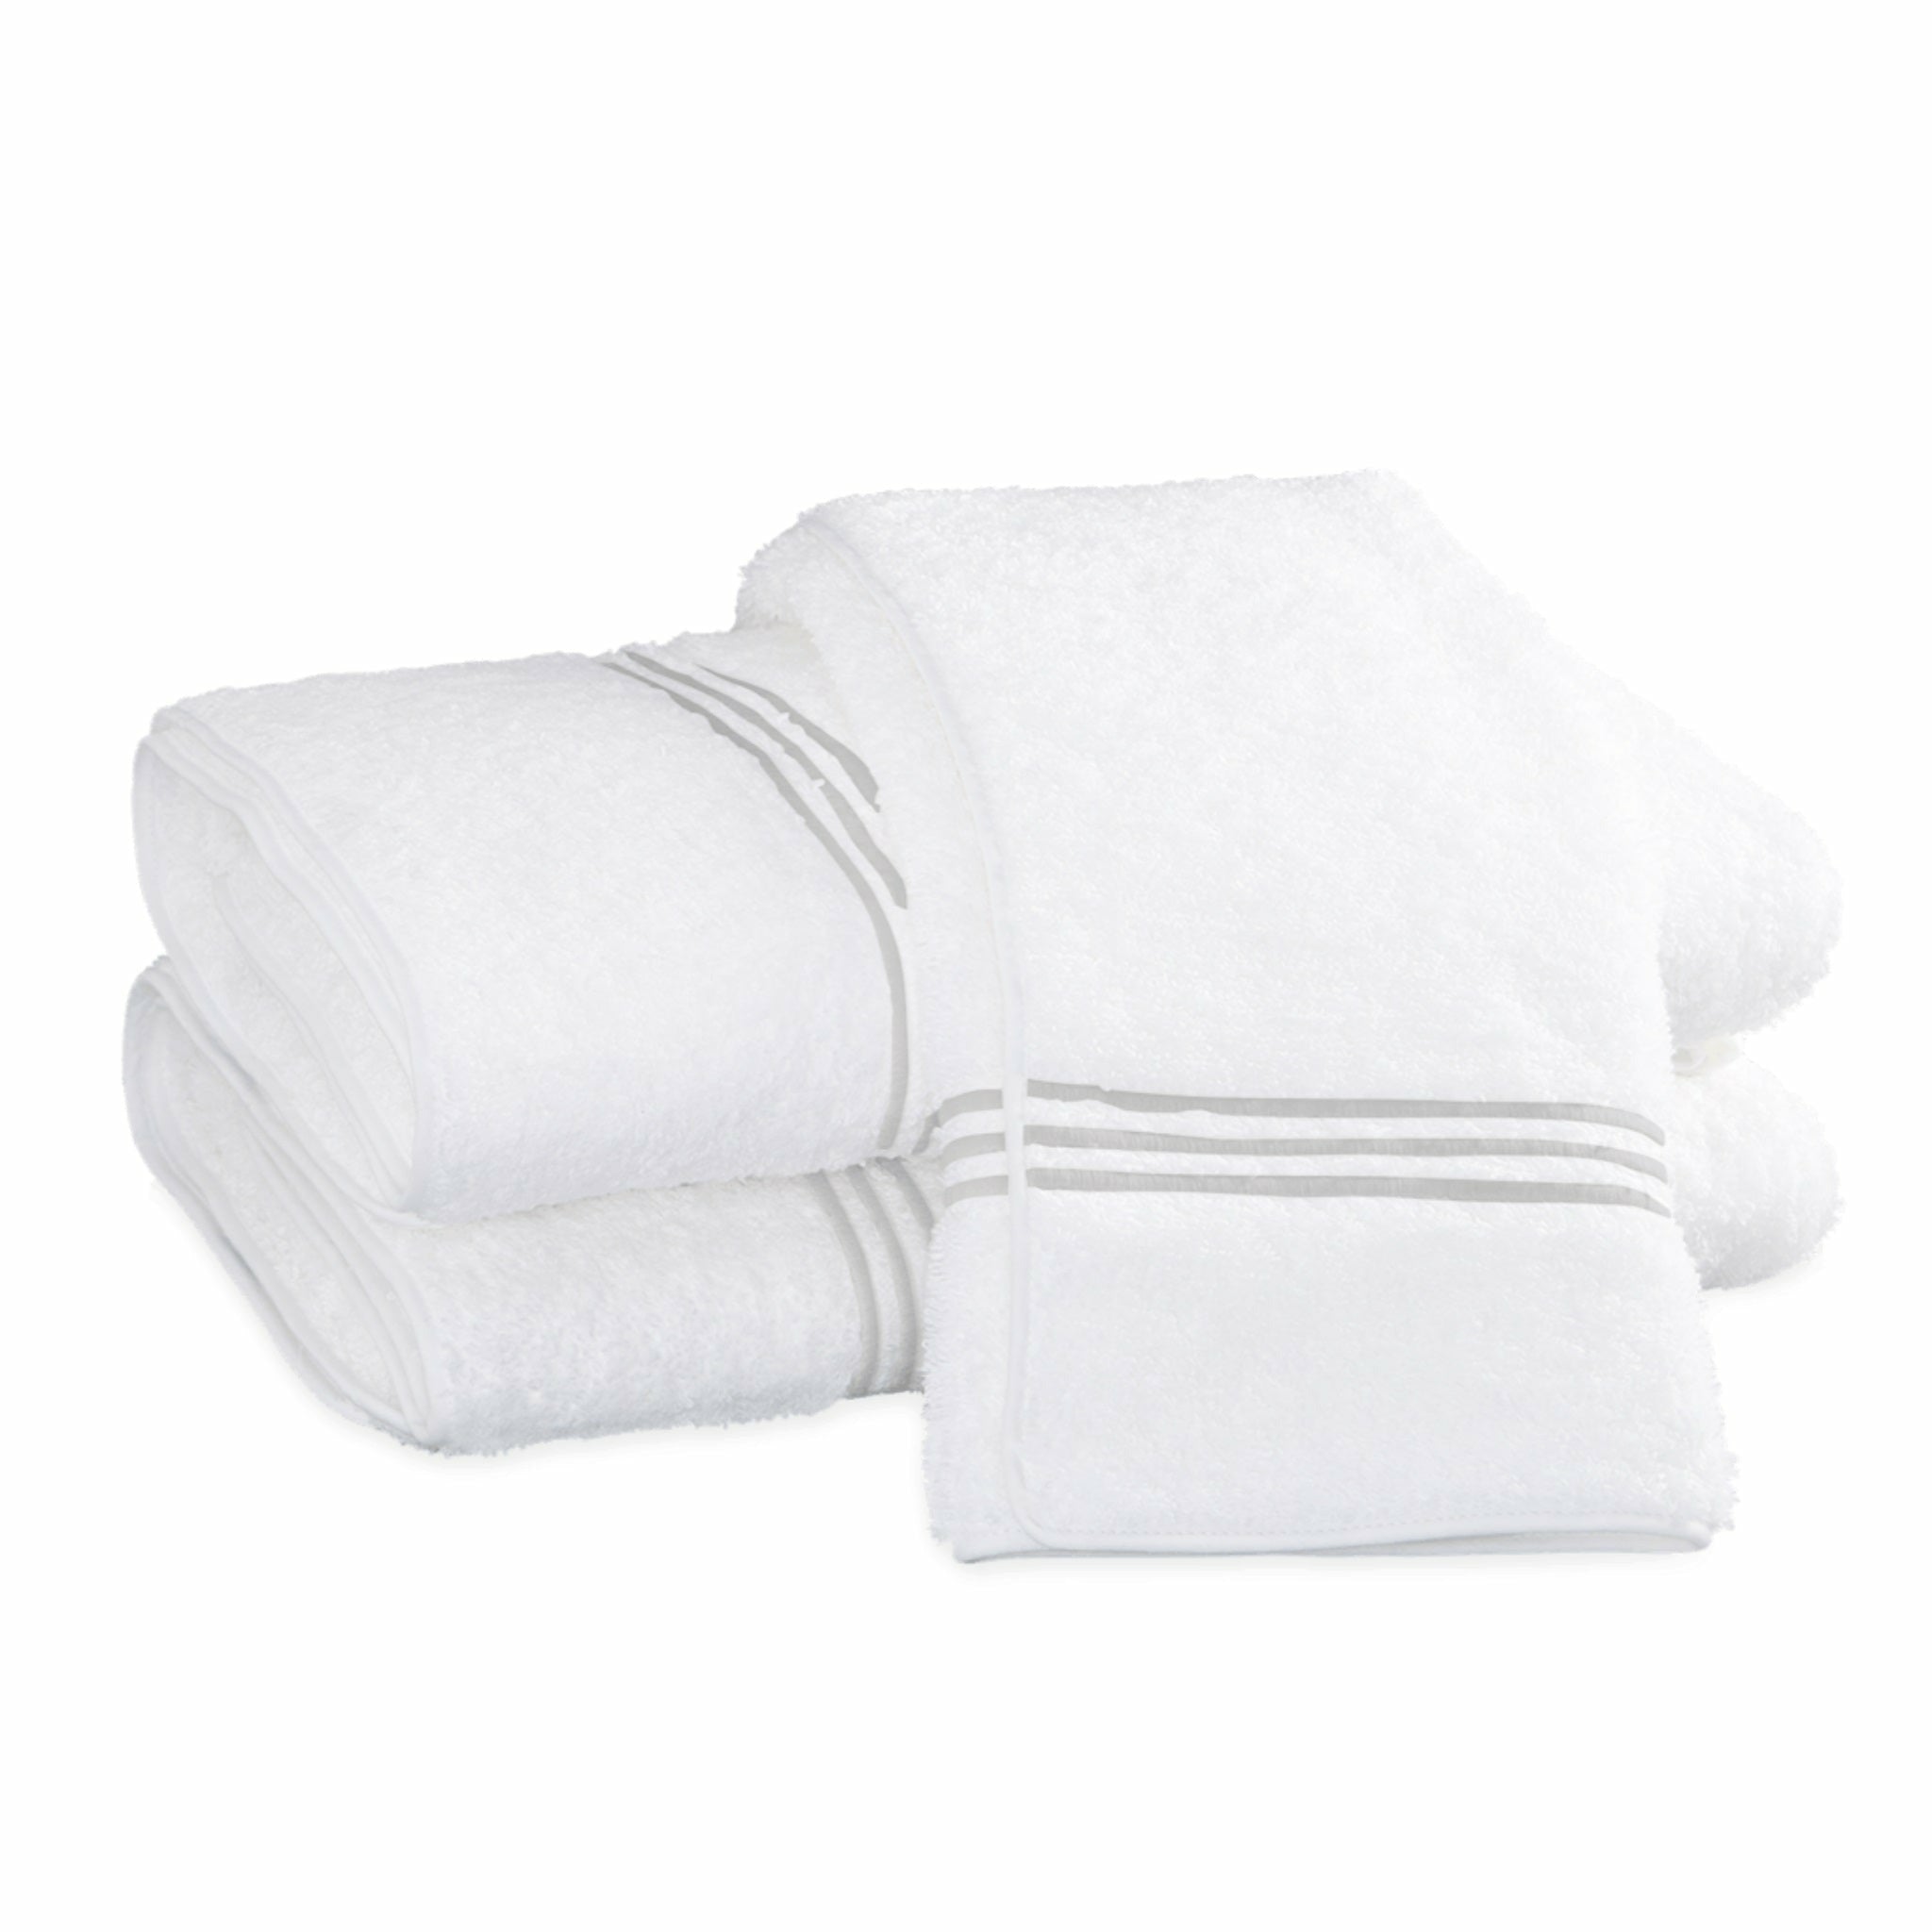 https://flandb.com/cdn/shop/products/Matouk-Bel-Tempo-Bath-Towels-Silver.jpg?v=1660866820